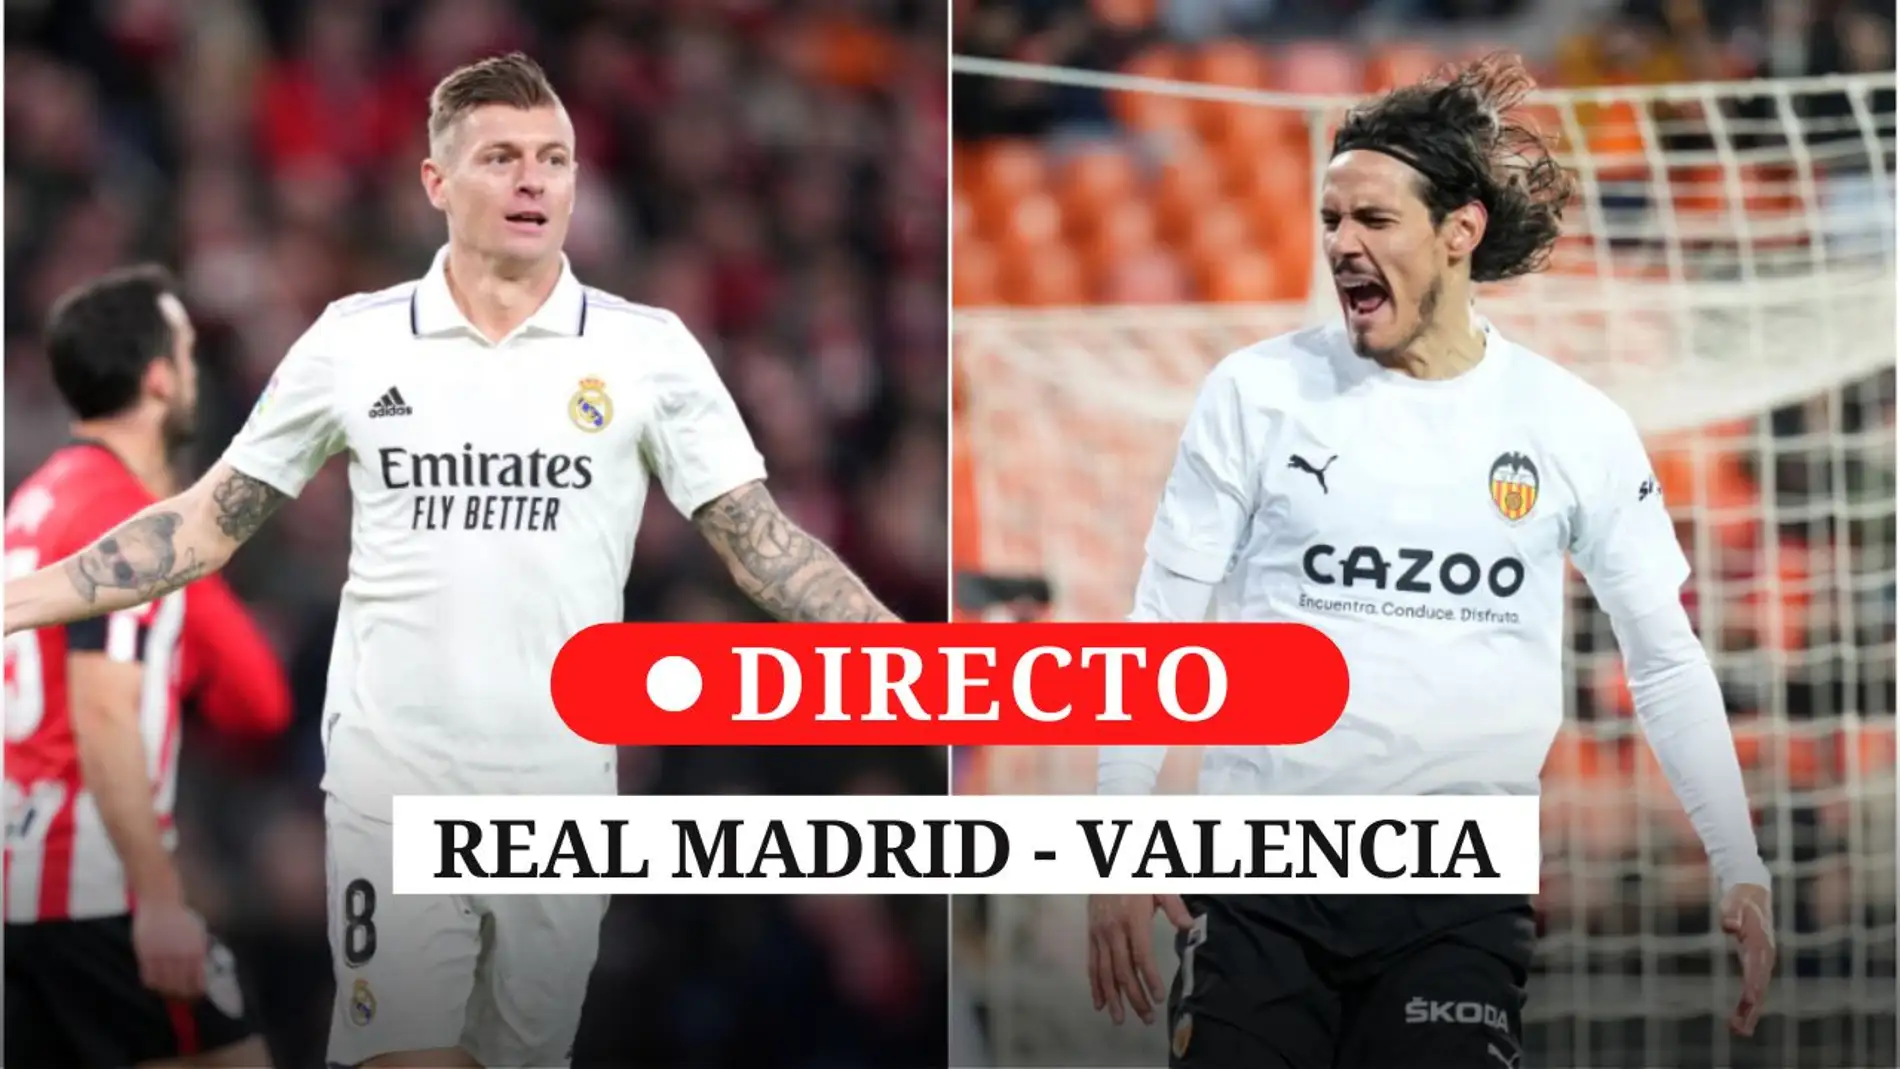 Real Madrid - Valencia, en directo.